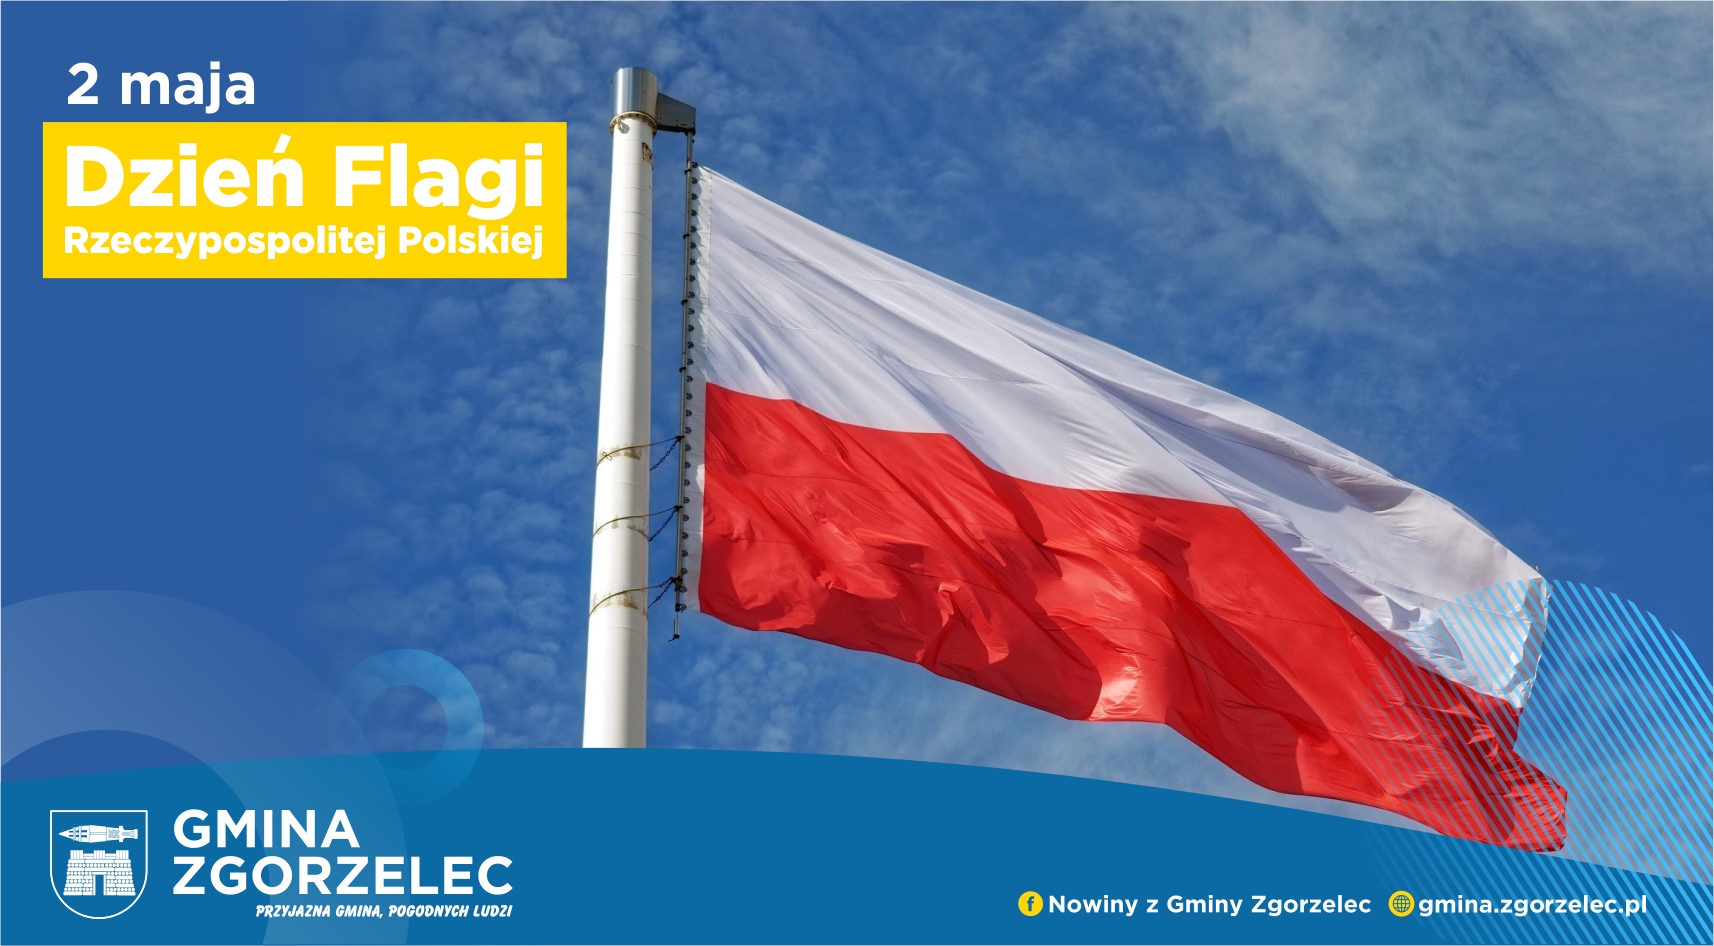 Święto Flagi Rzeczypospolitej Polskiej